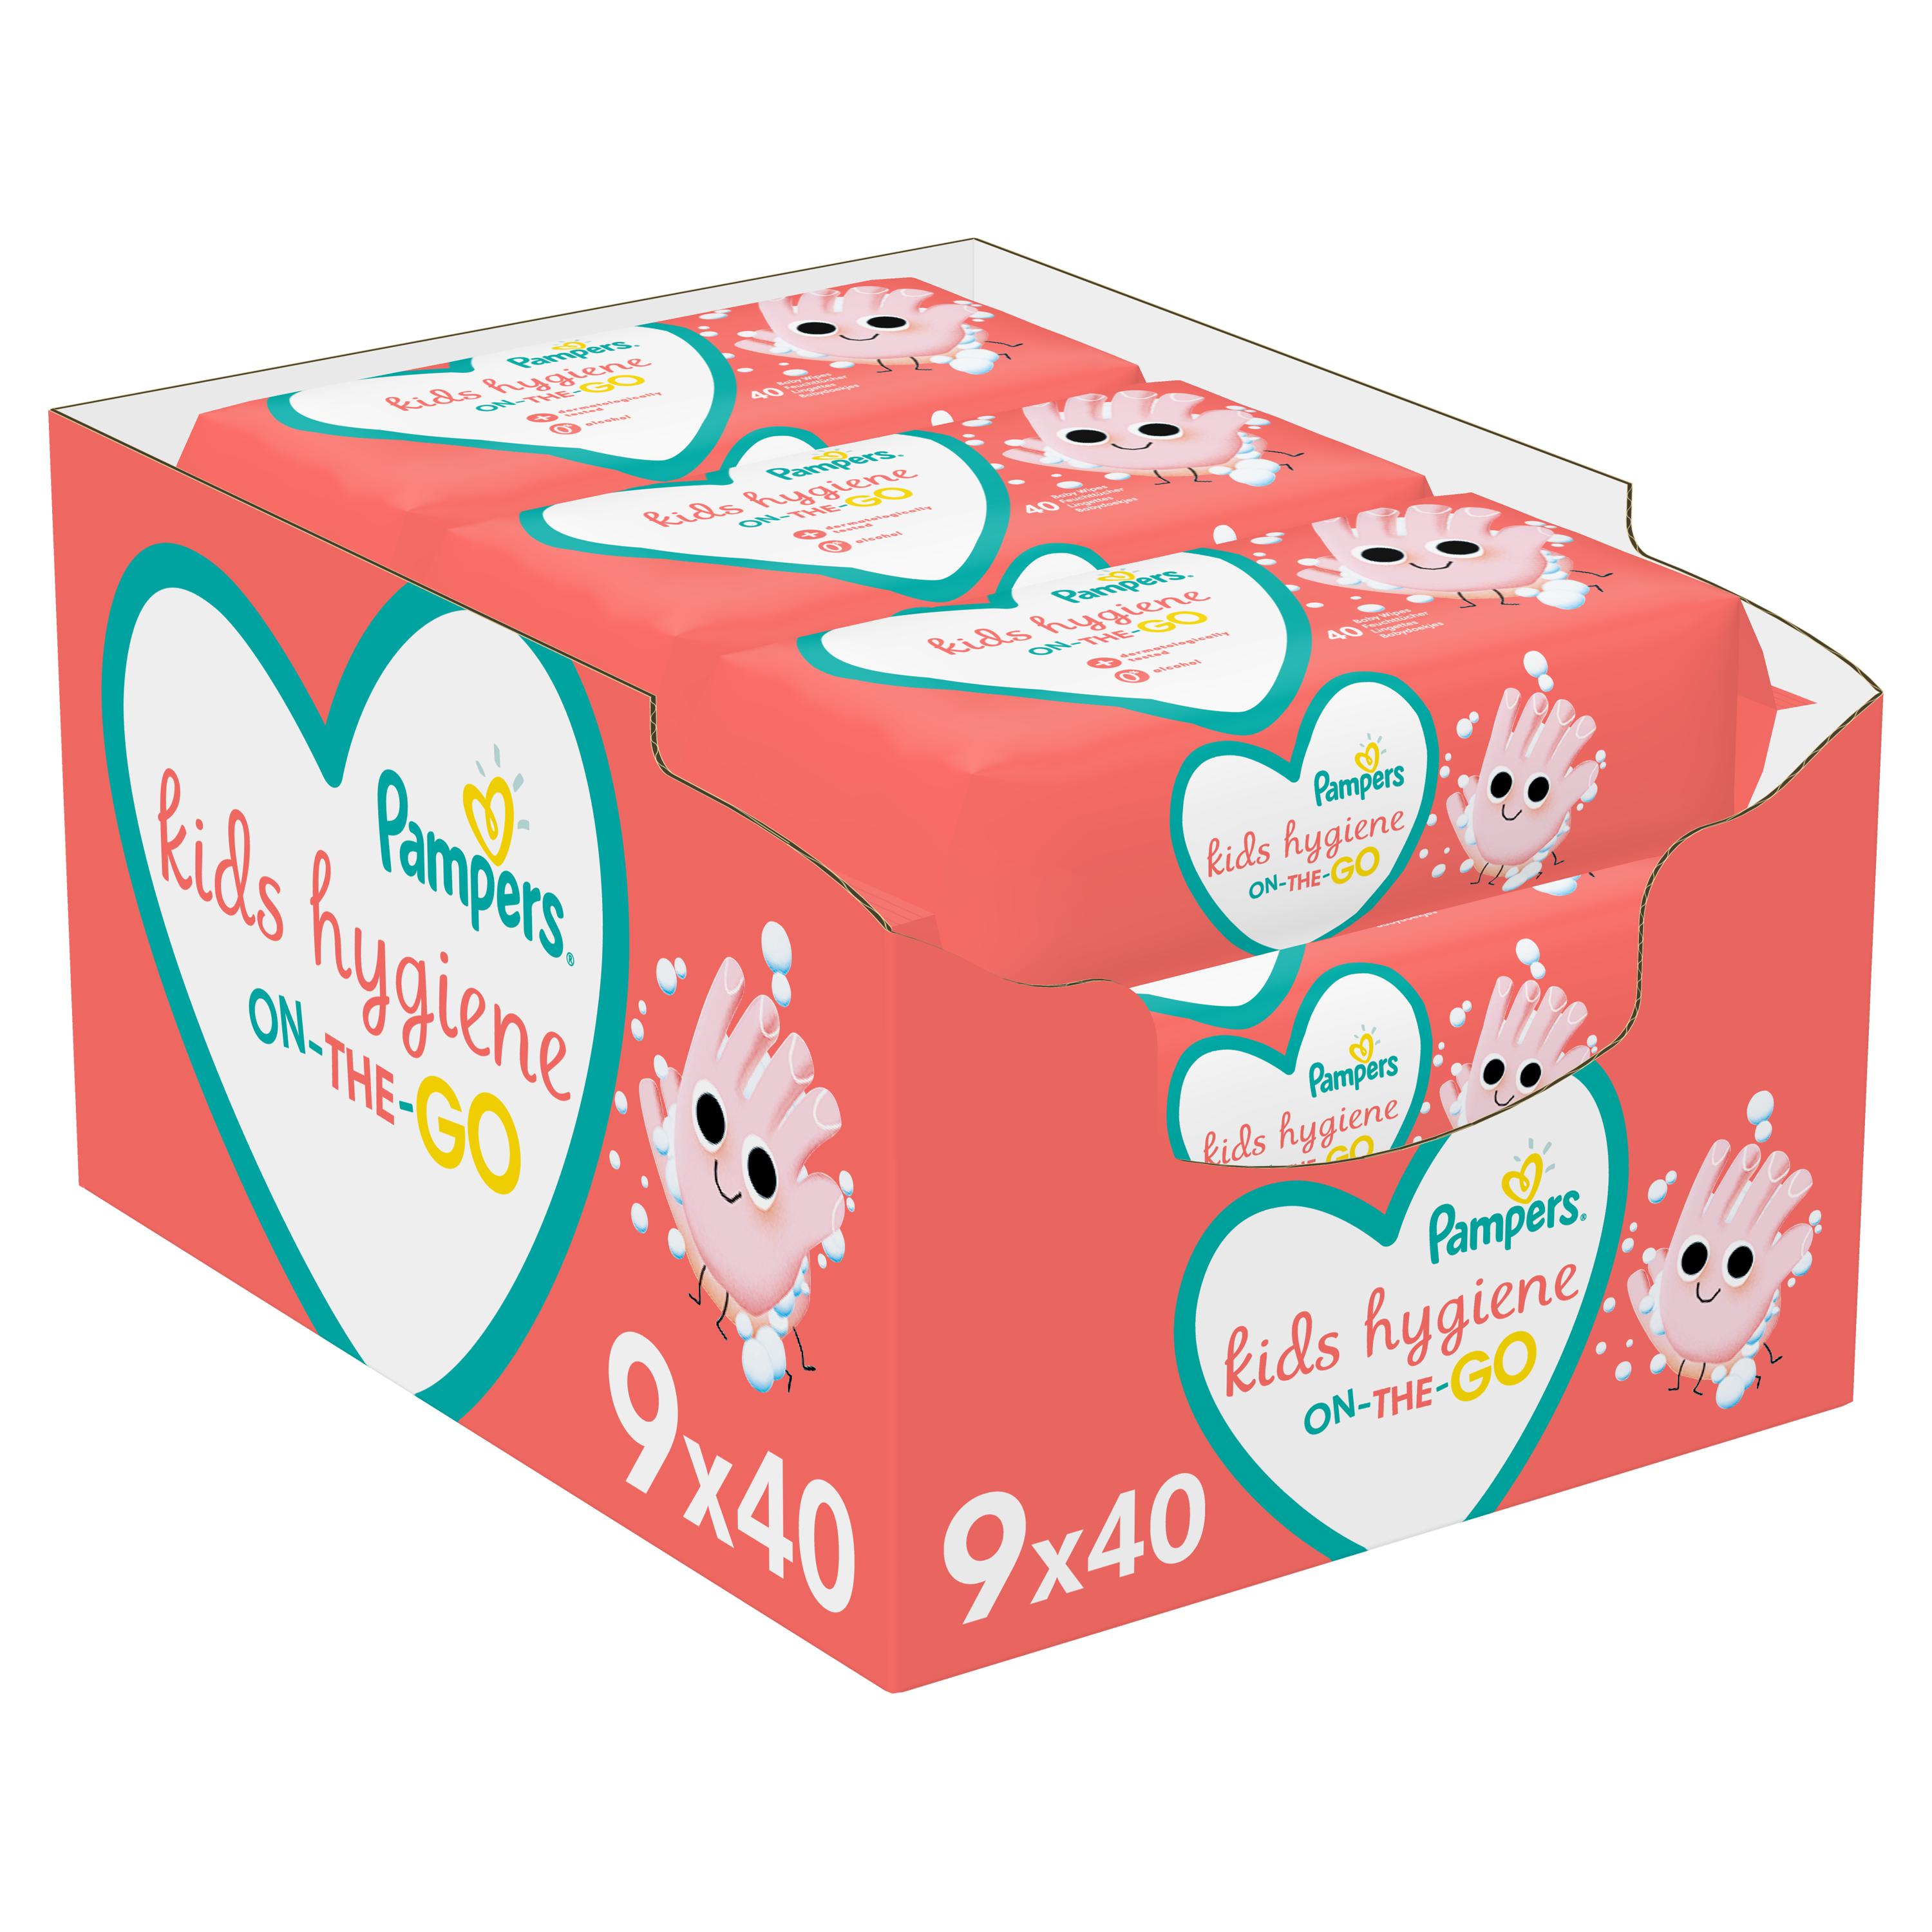 Набор детских влажных салфеток Pampers Kids Hygiene On-The-Go, 360 шт. (9 упаковок по 40 шт.) - фото 1